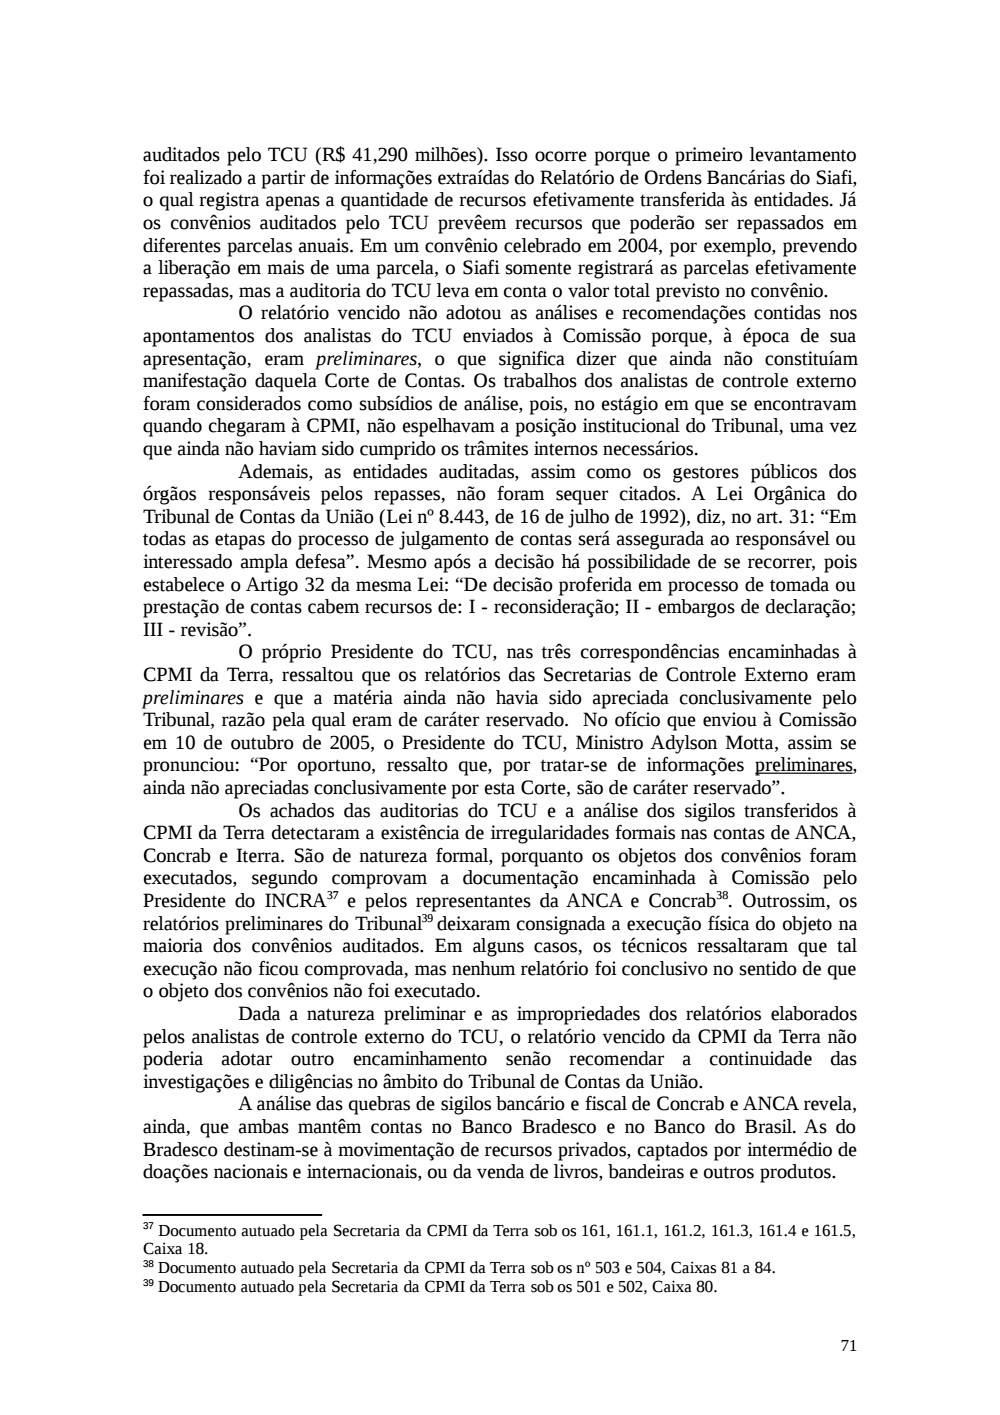 Page 71 from Relatório final da comissão